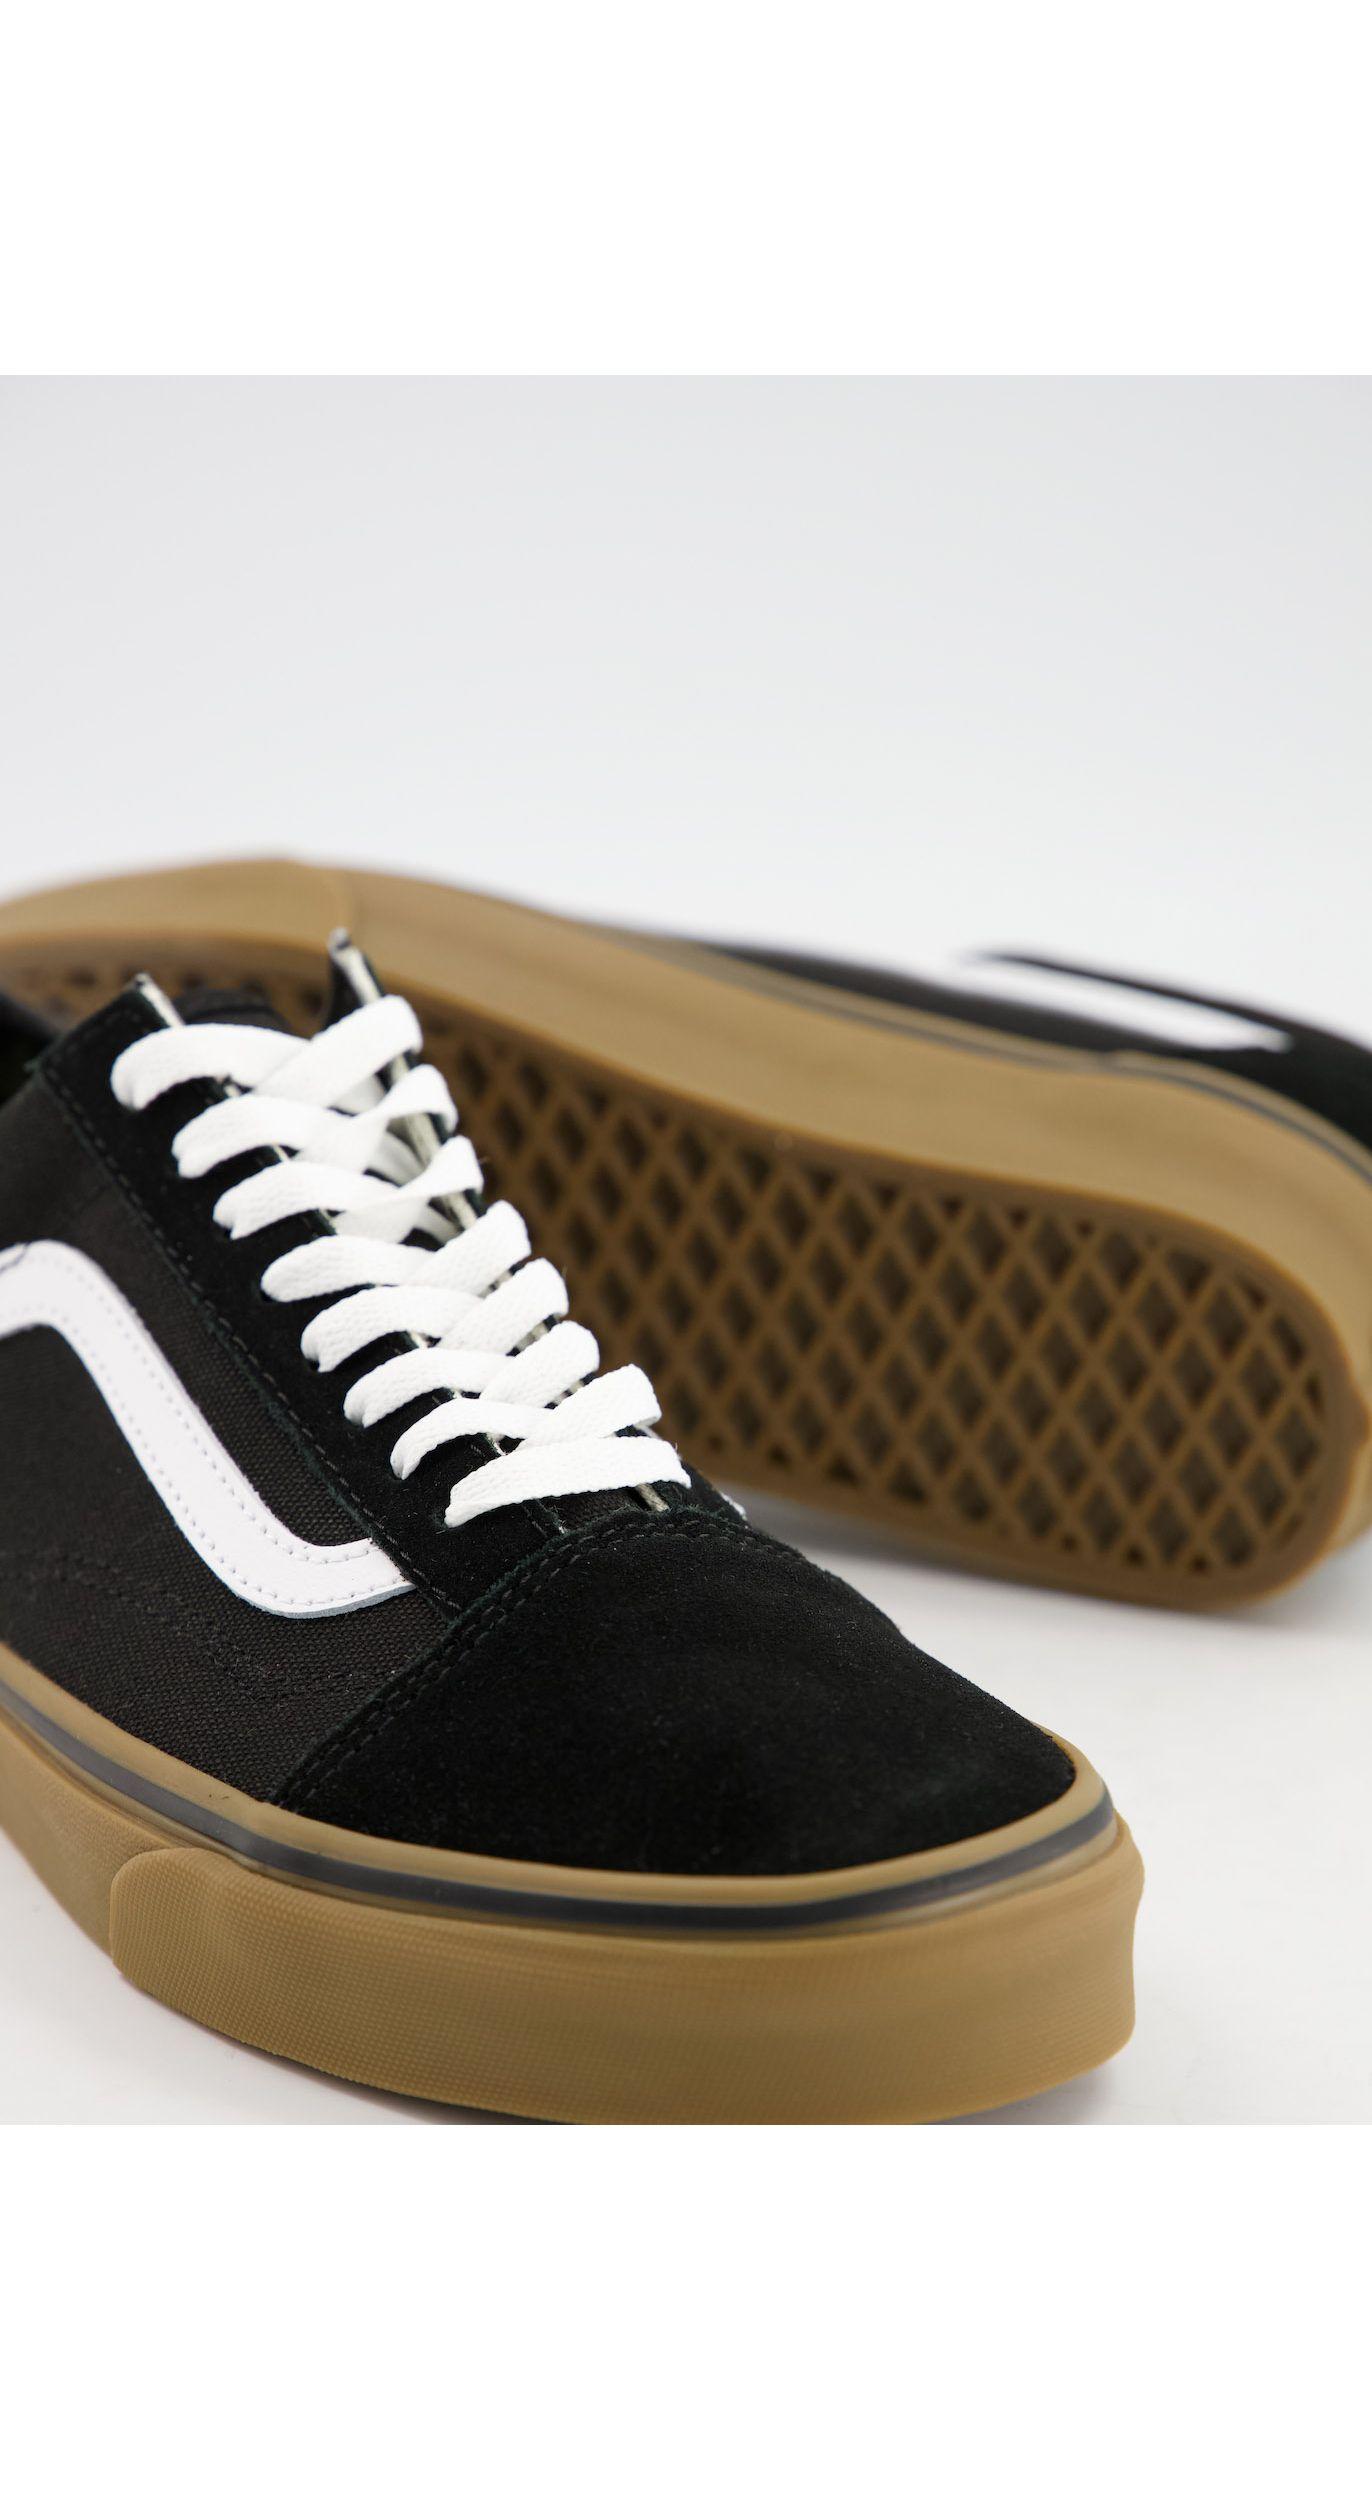 Vans Rubber Old Skool Gum Sole Sneakers in Black for Men - Lyst